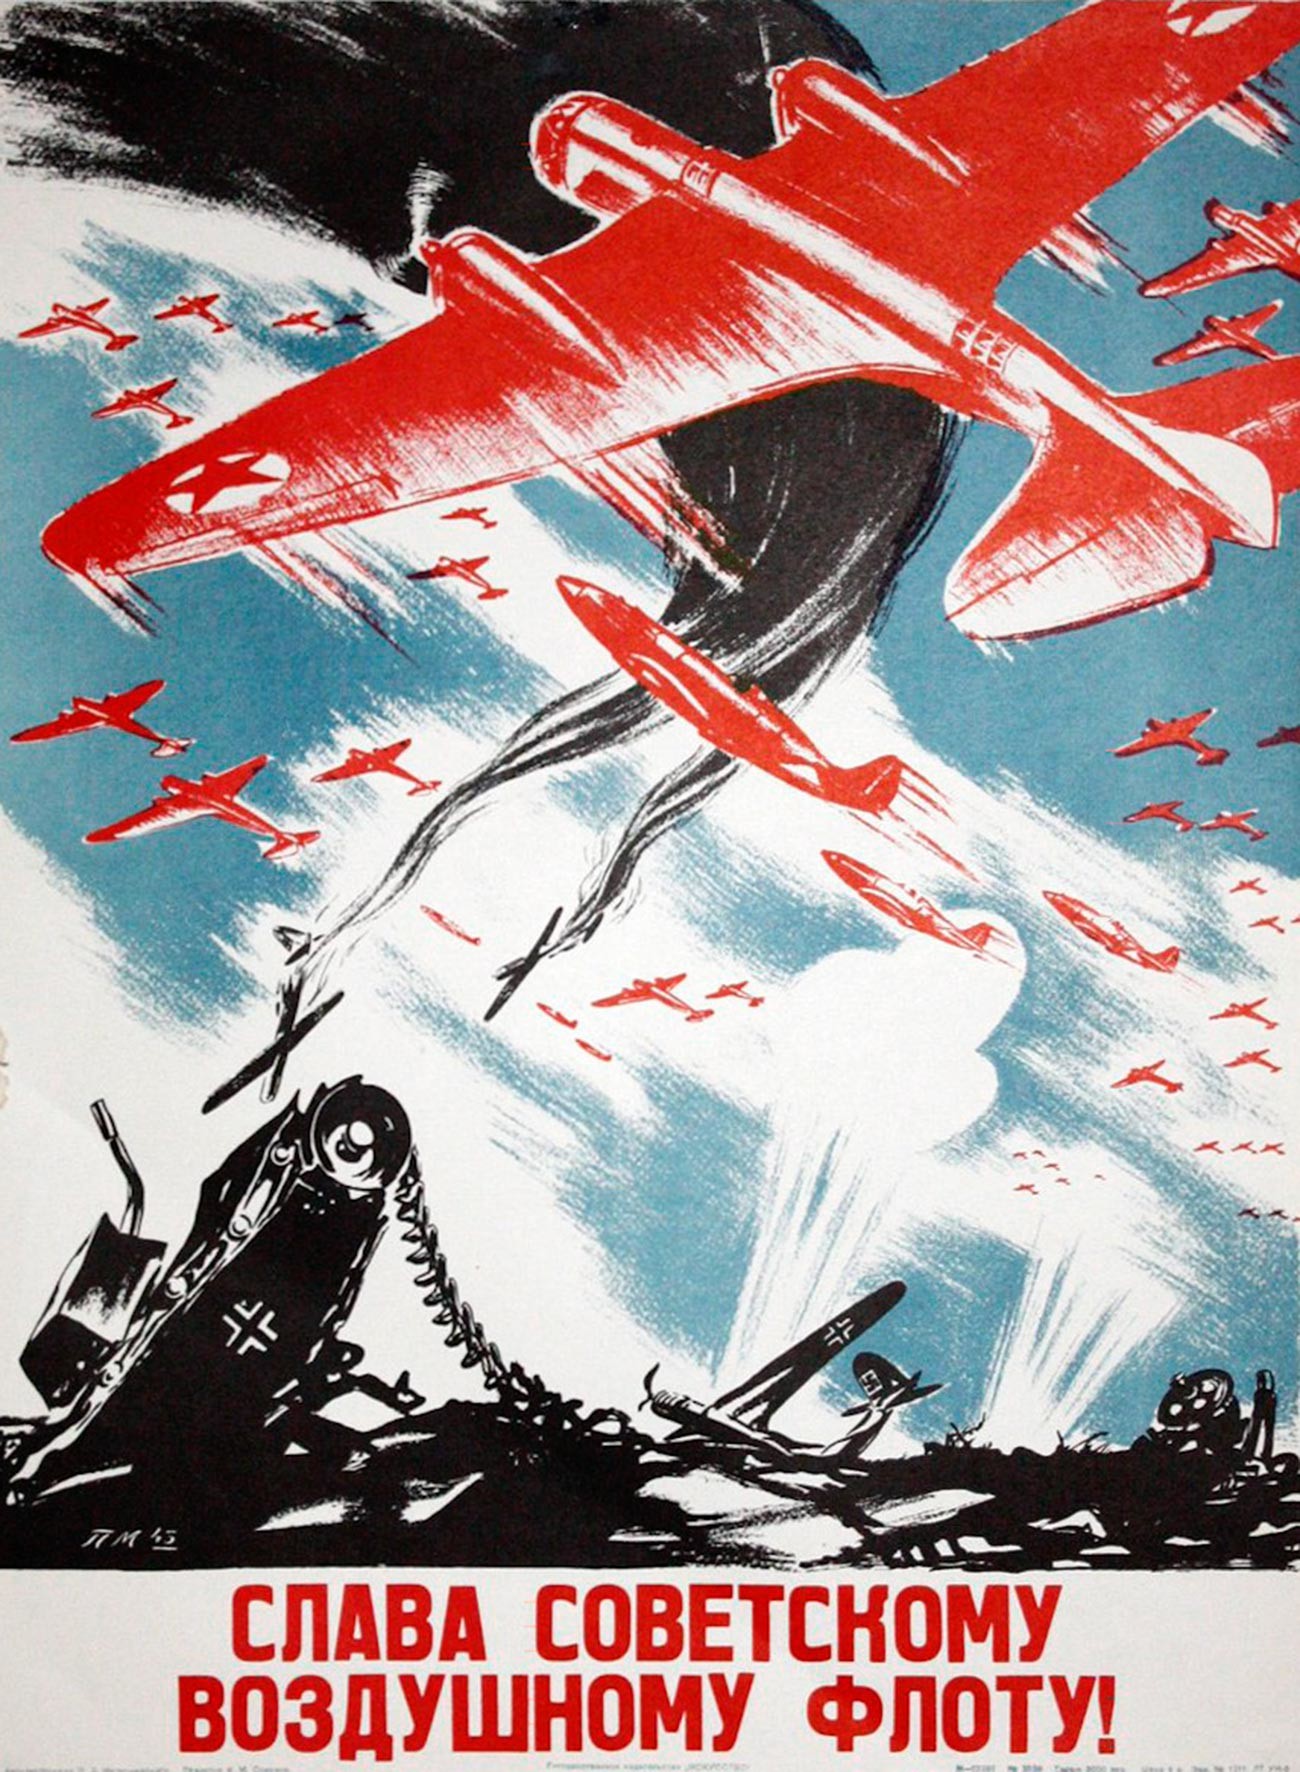 « Gloire à la flotte aérienne soviétique ! »